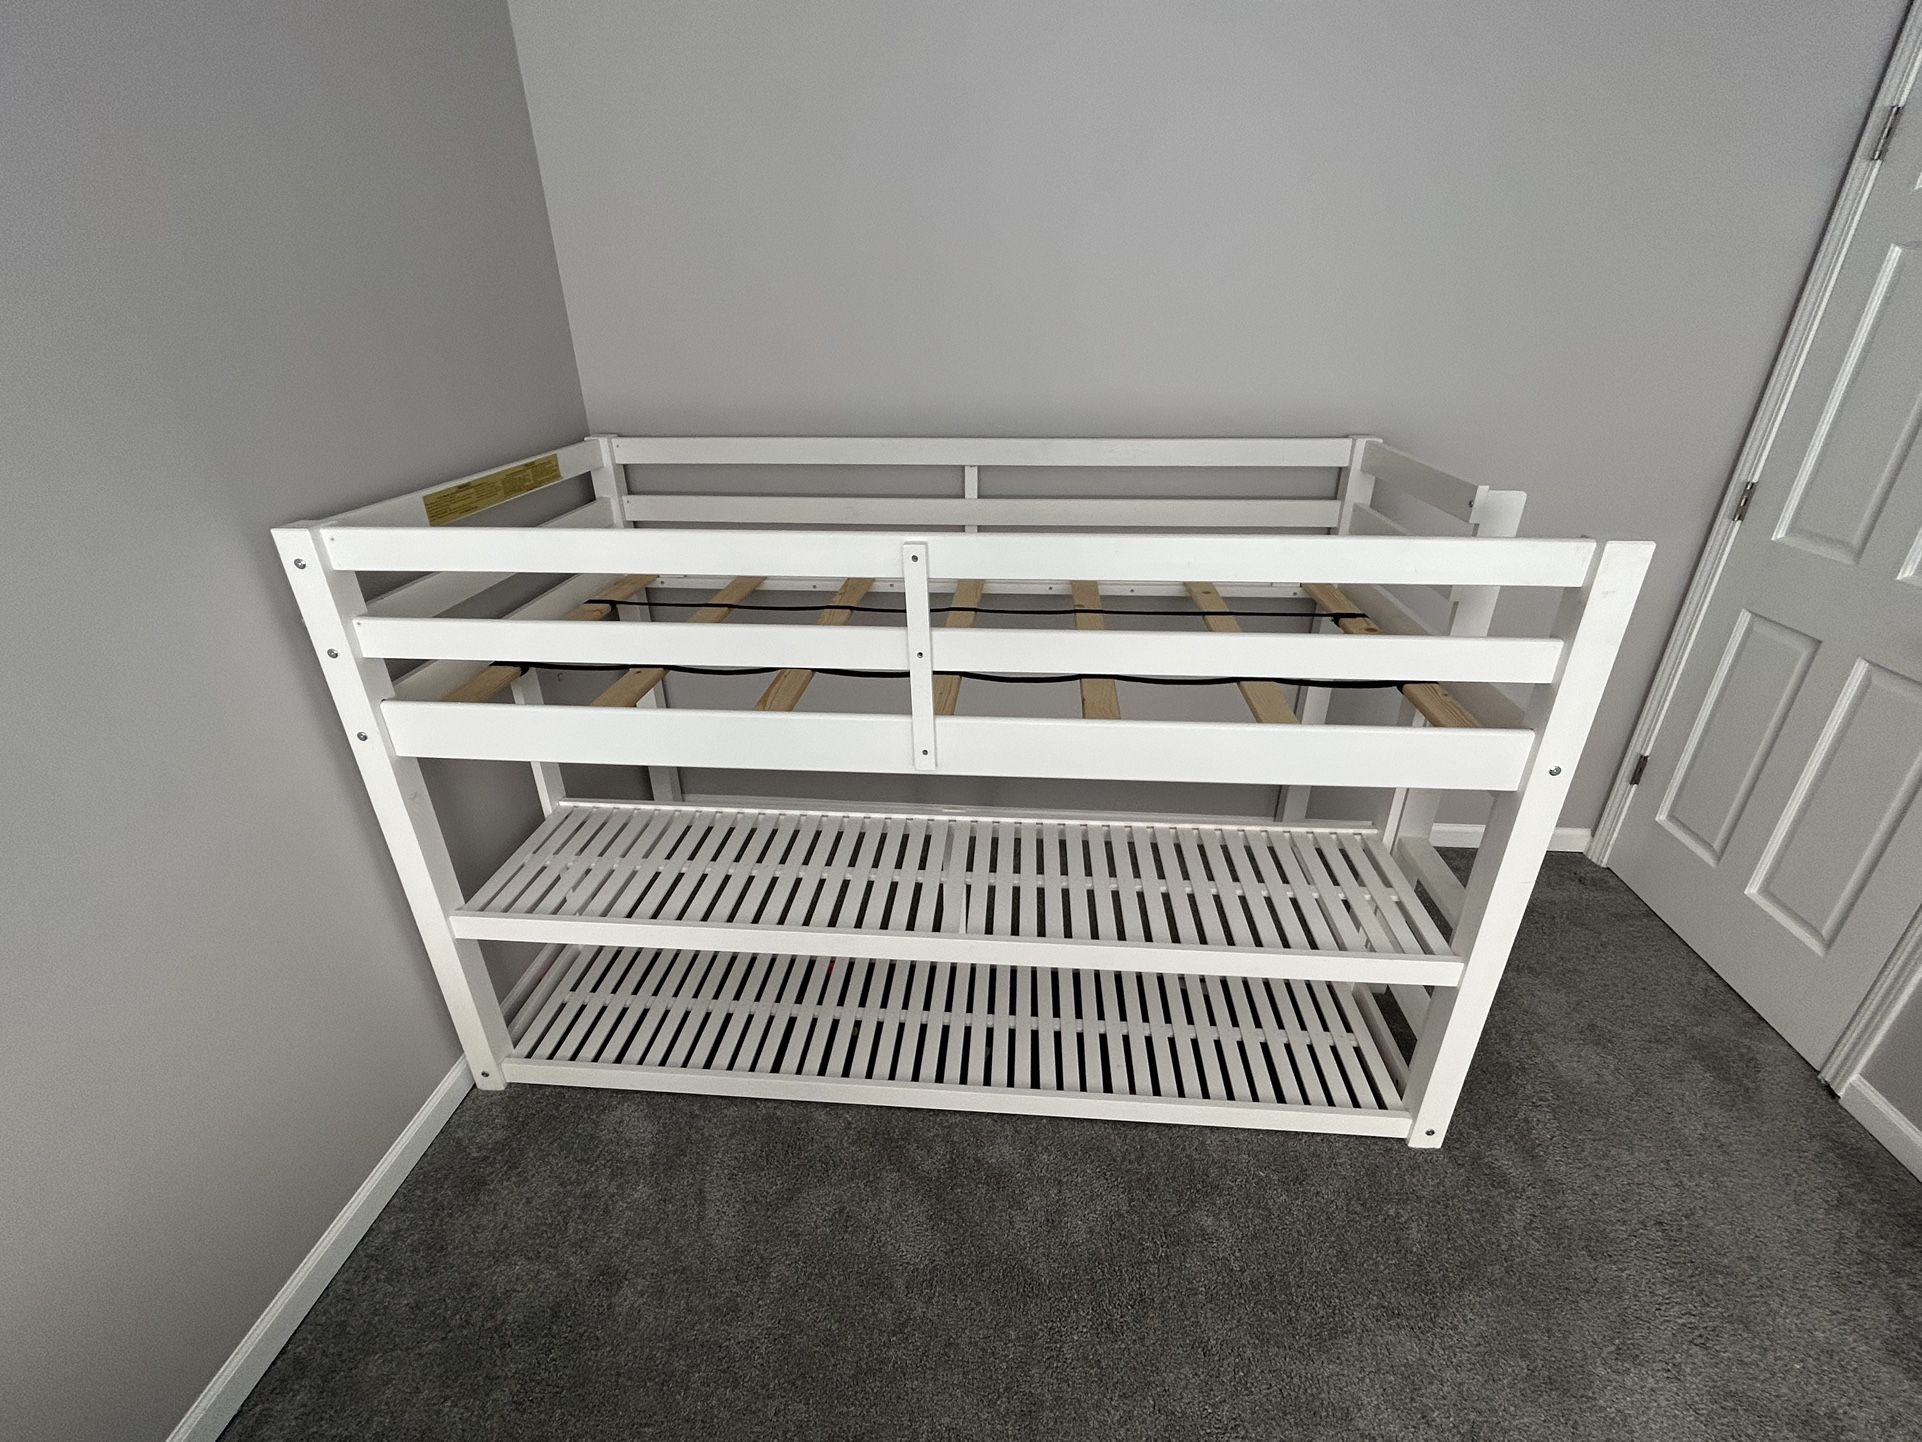 Twin Loft Bed Frame Wood Storage Shelves Kids Rail Bedroom Furniture Modern Dorm